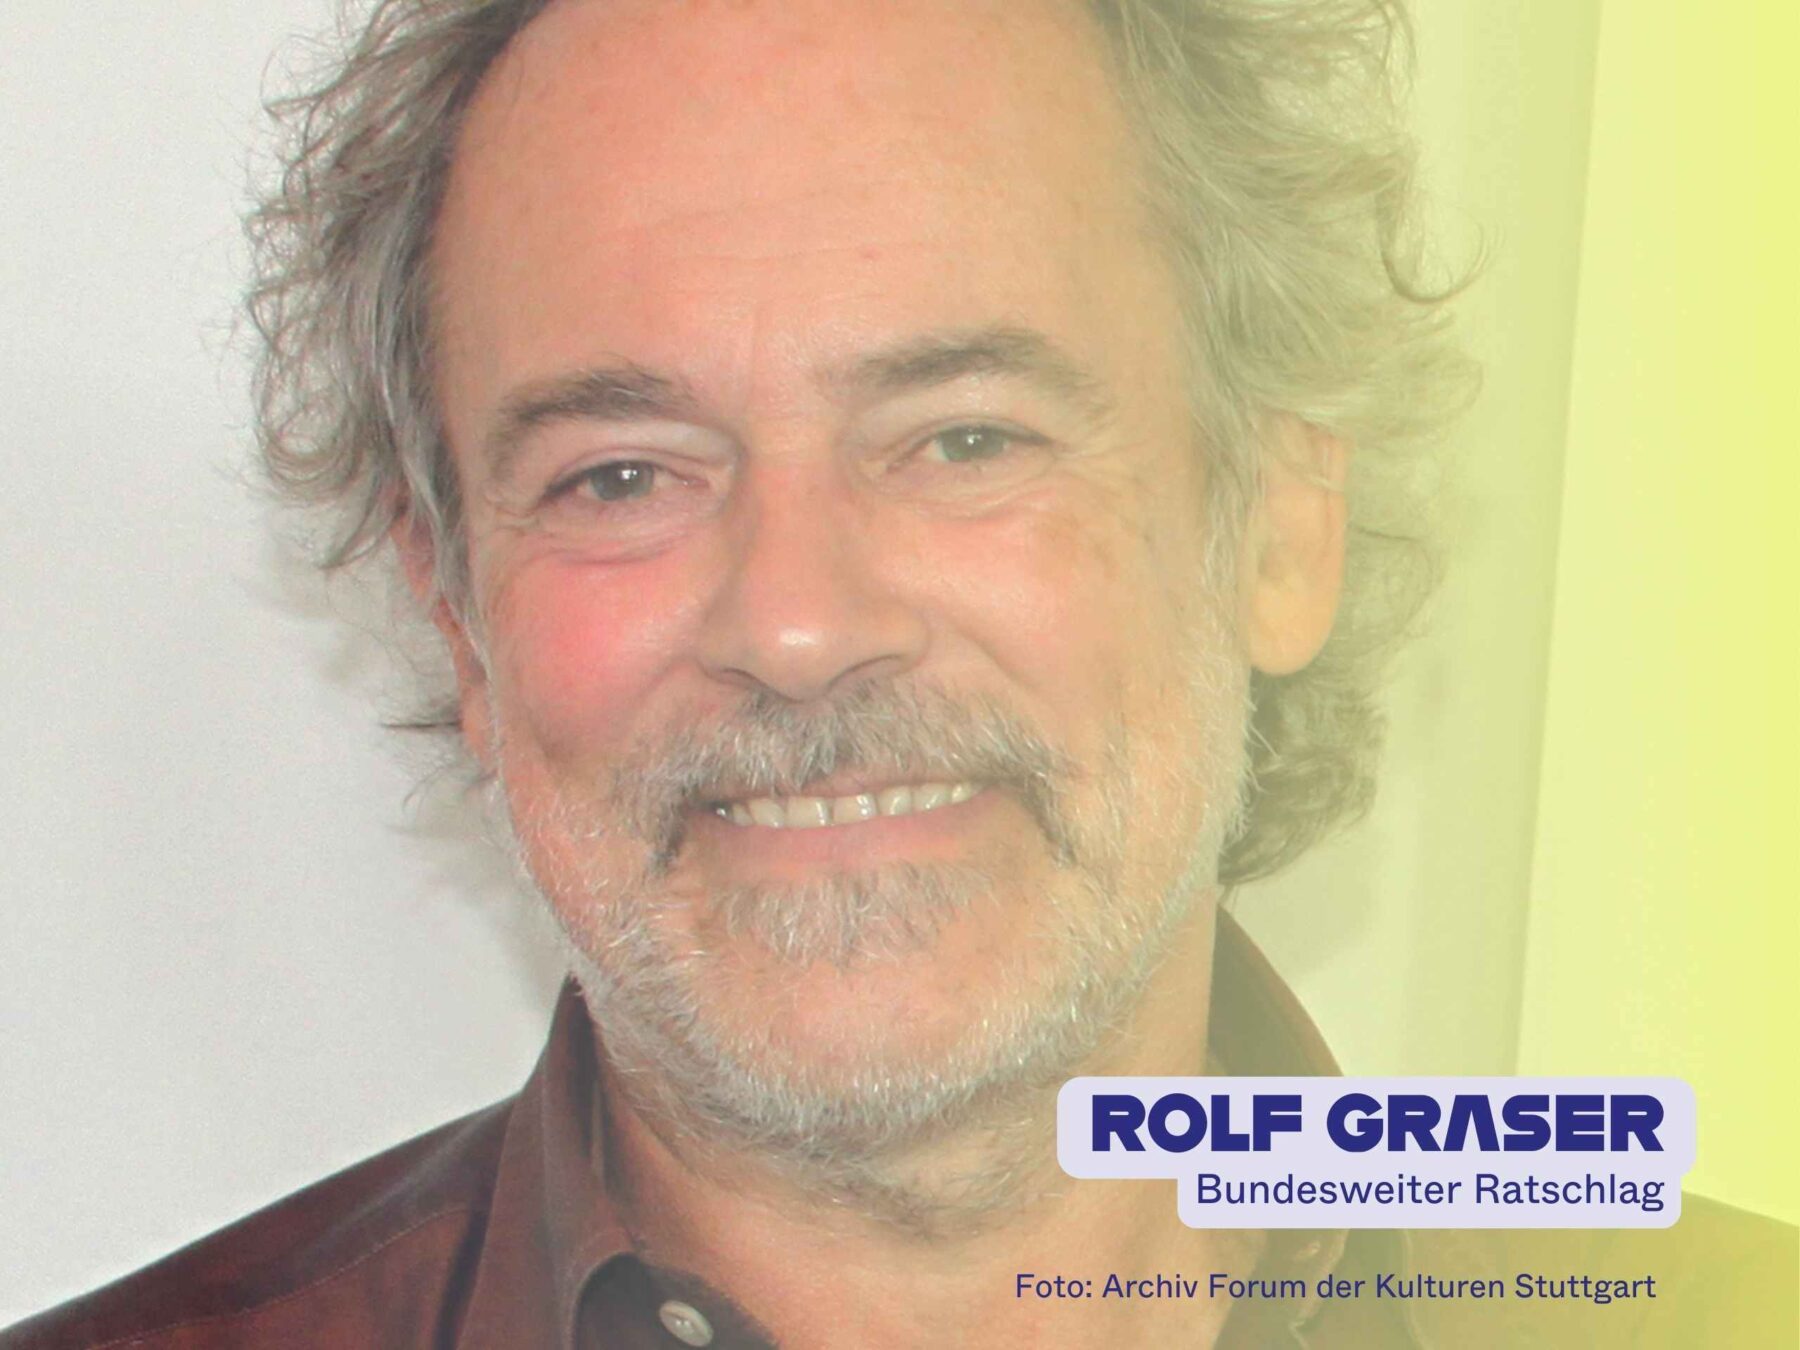 Rolf Graser